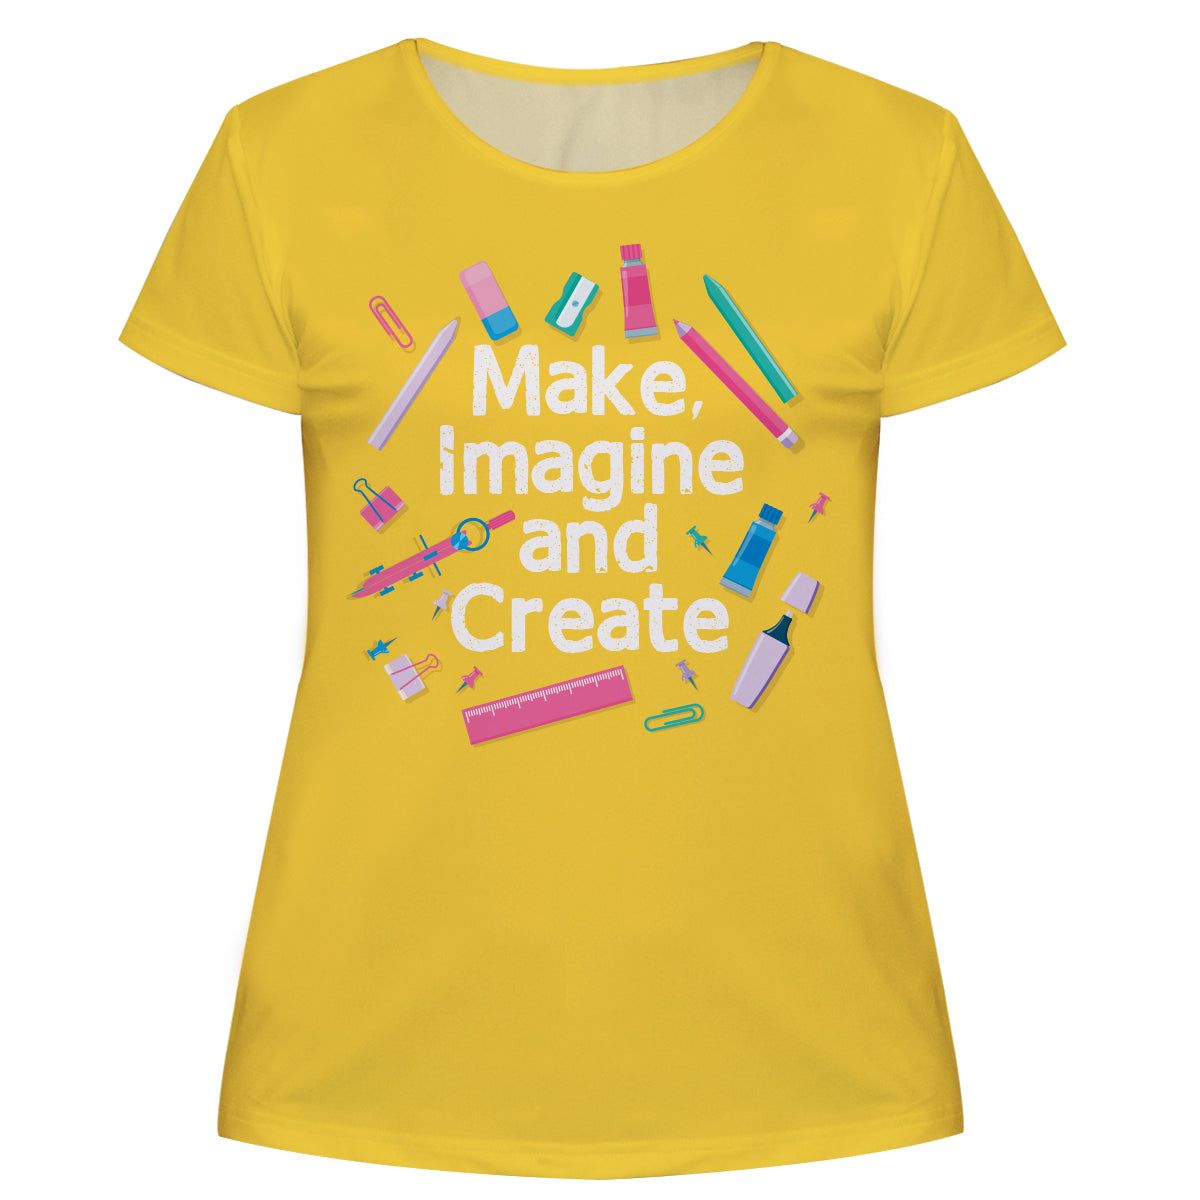 Make Imagine and Create Yellow Short Sleeve Tee Shirt